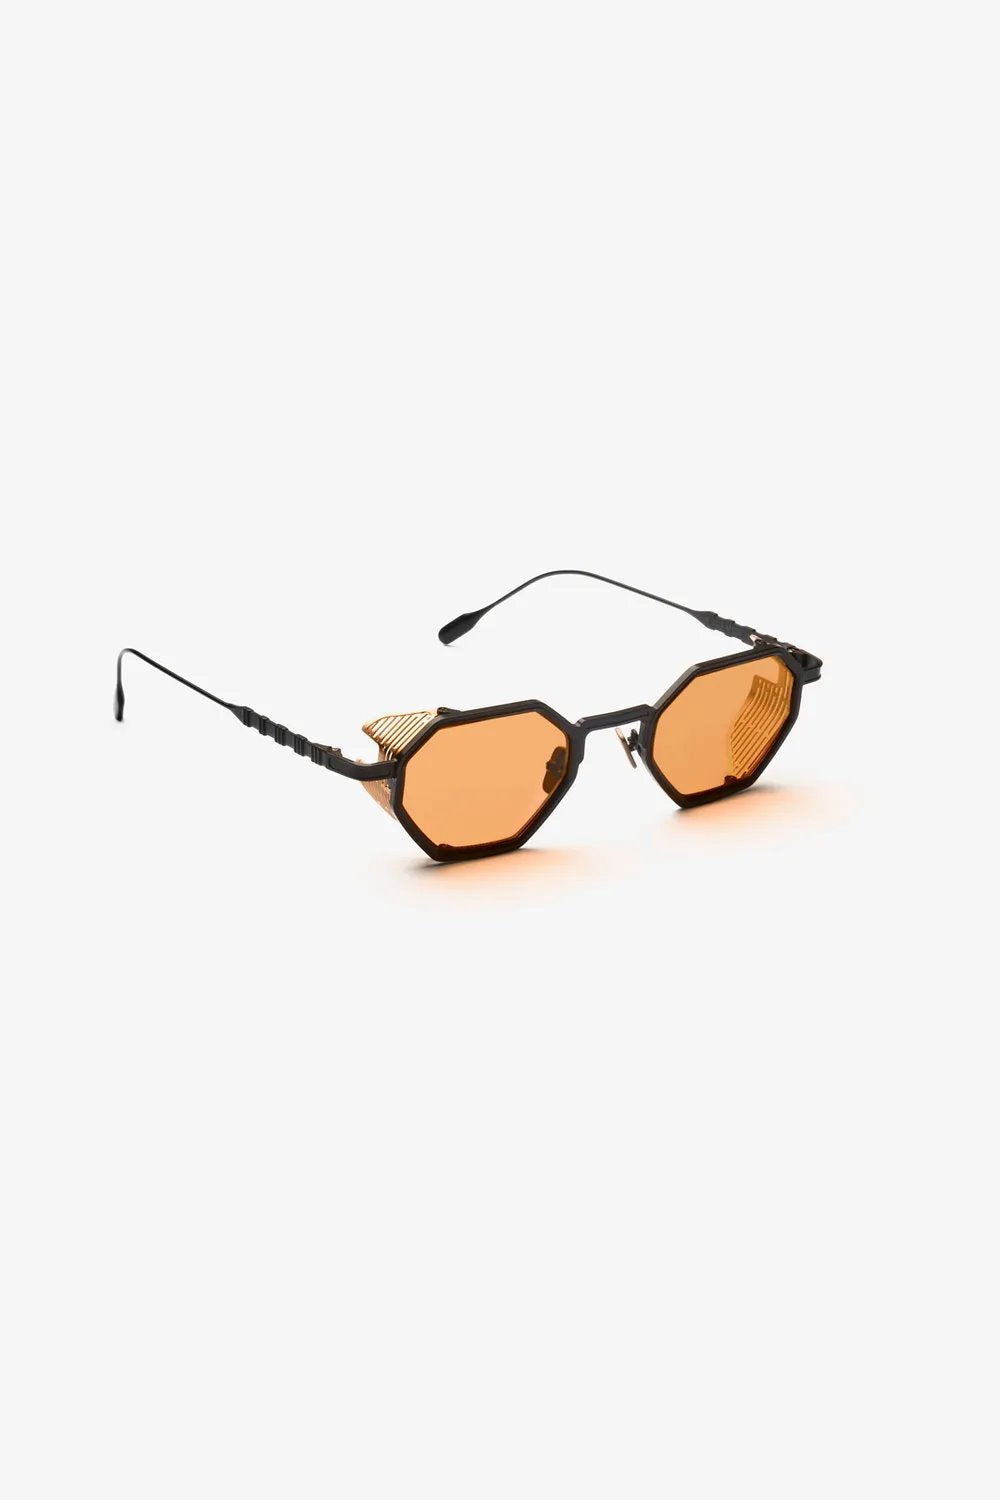 Capote - CC13 Sunglasses Capote Orange ONES 